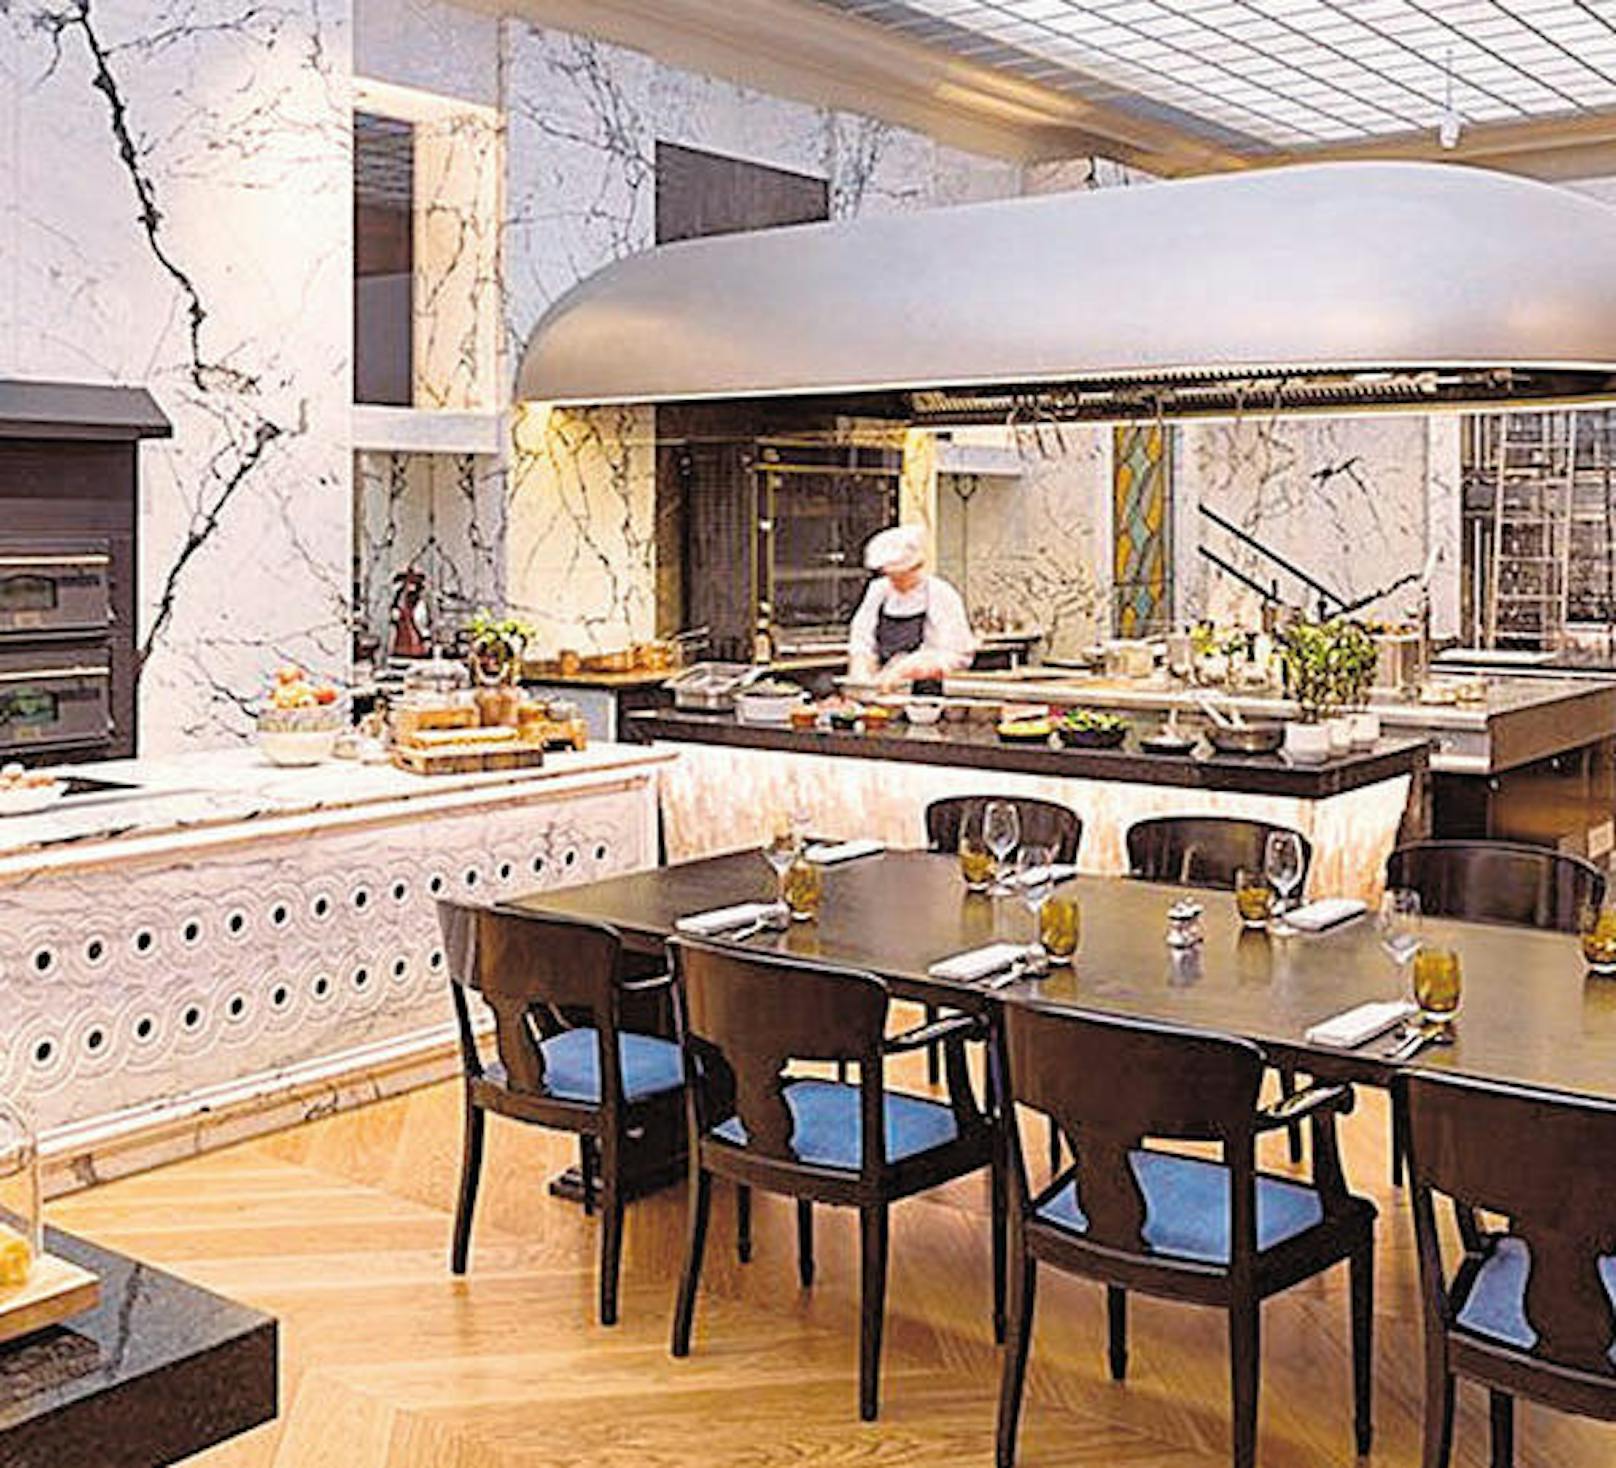 Gans oder Truthahn bietet auch das Restaurant "The Bank Brasserie &amp; Bar".